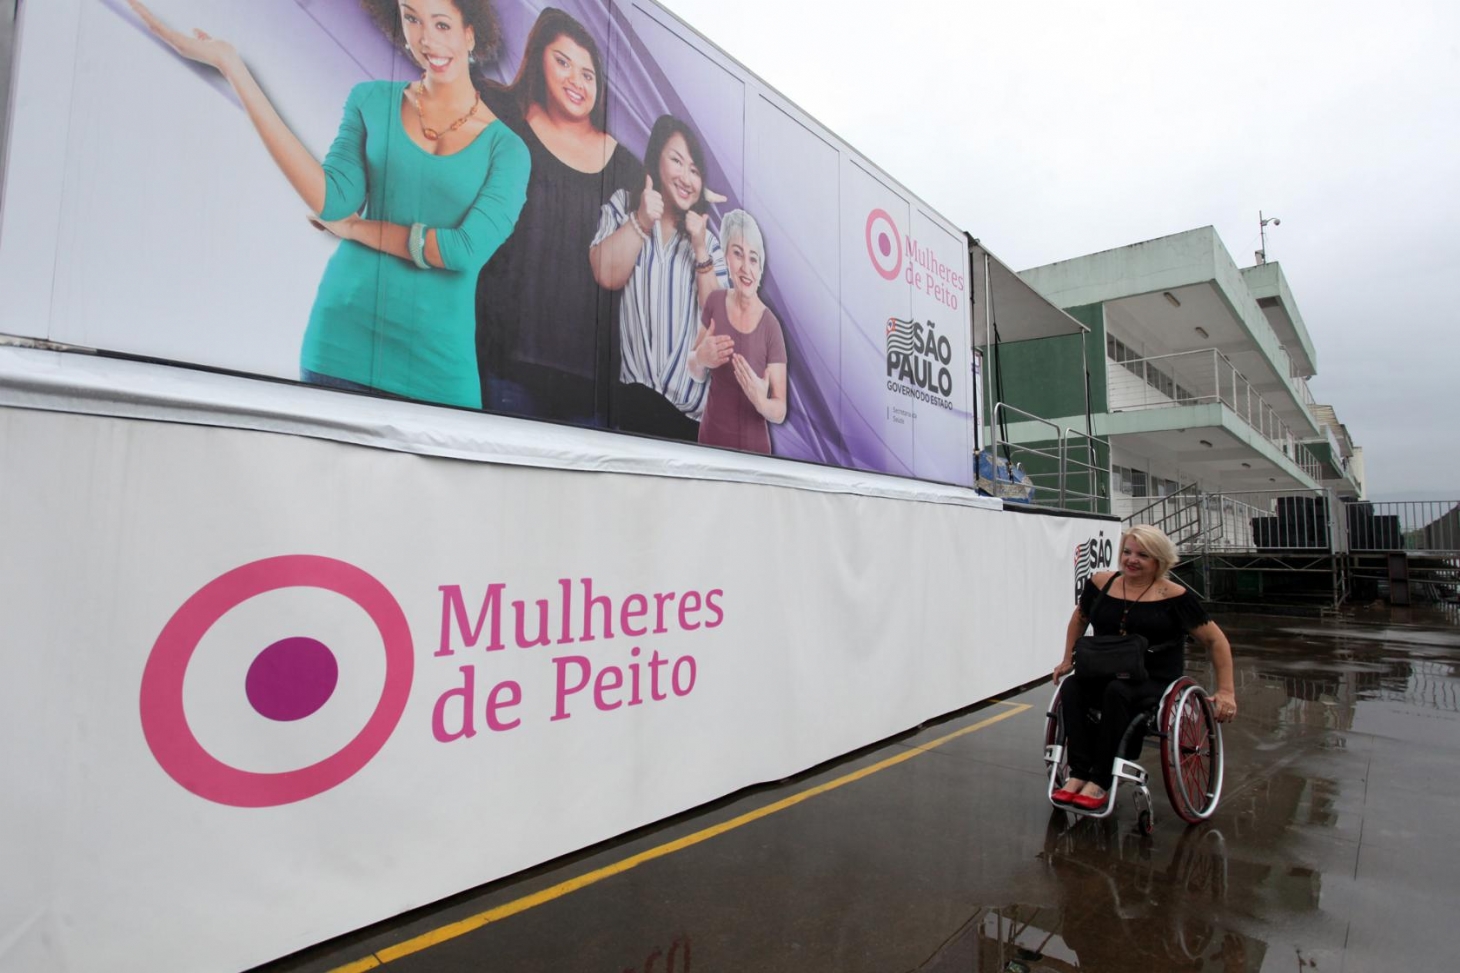 Carreta da mamografia é acessível para pessoas com deficiência e mobilidade reduzida em Santos | Jornal da Orla